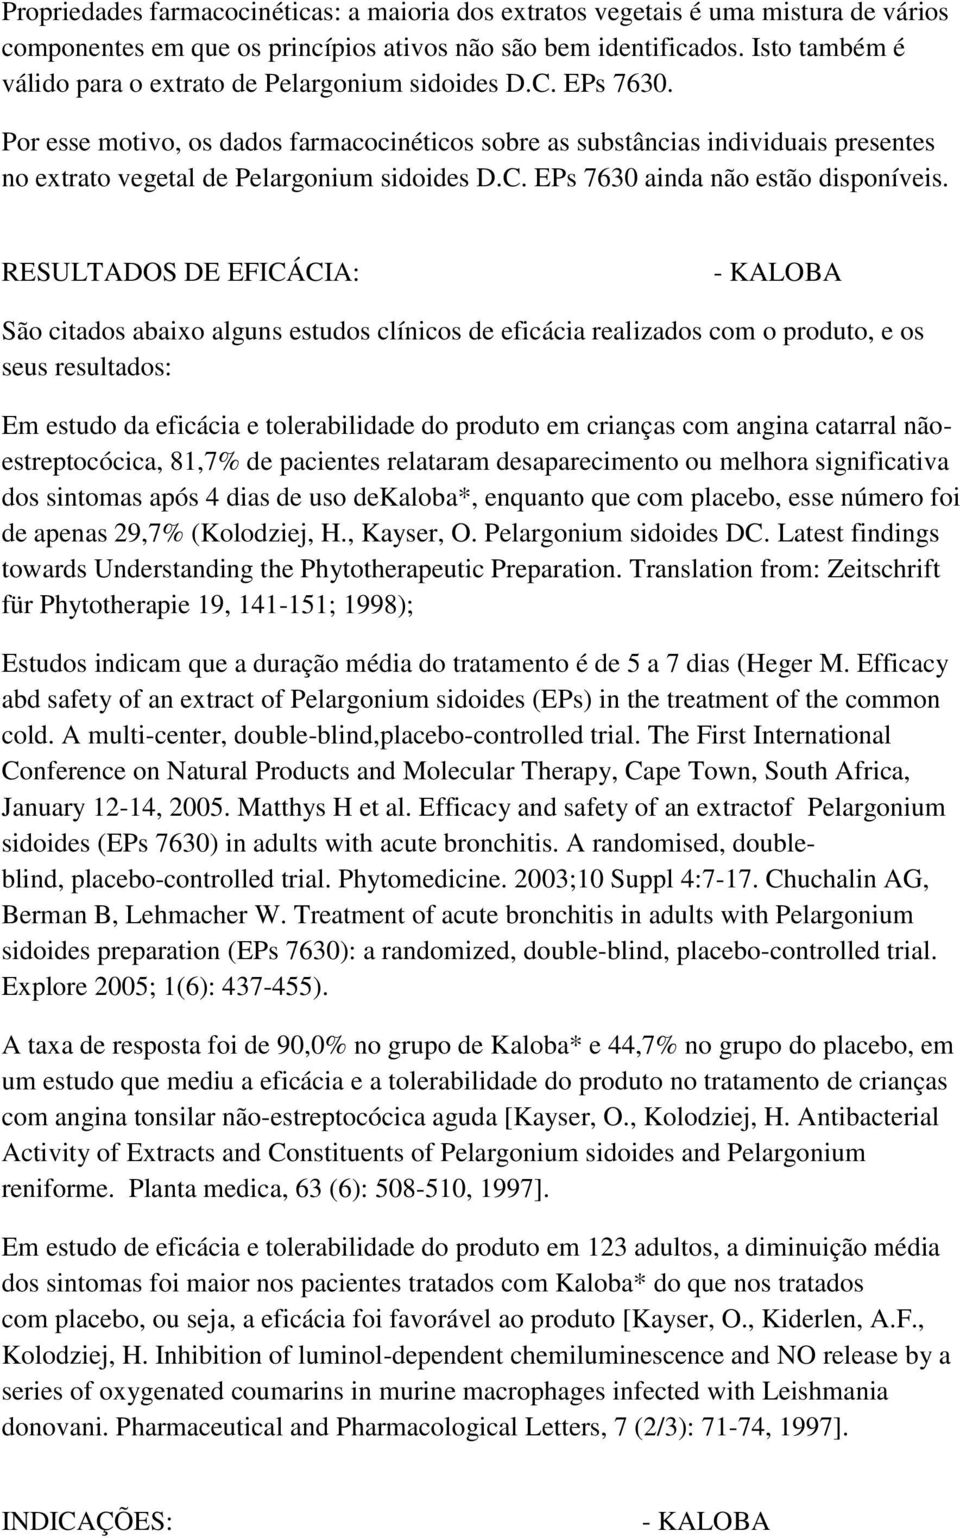 Por esse motivo, os dados farmacocinéticos sobre as substâncias individuais presentes no extrato vegetal de Pelargonium sidoides D.C. EPs 7630 ainda não estão disponíveis.